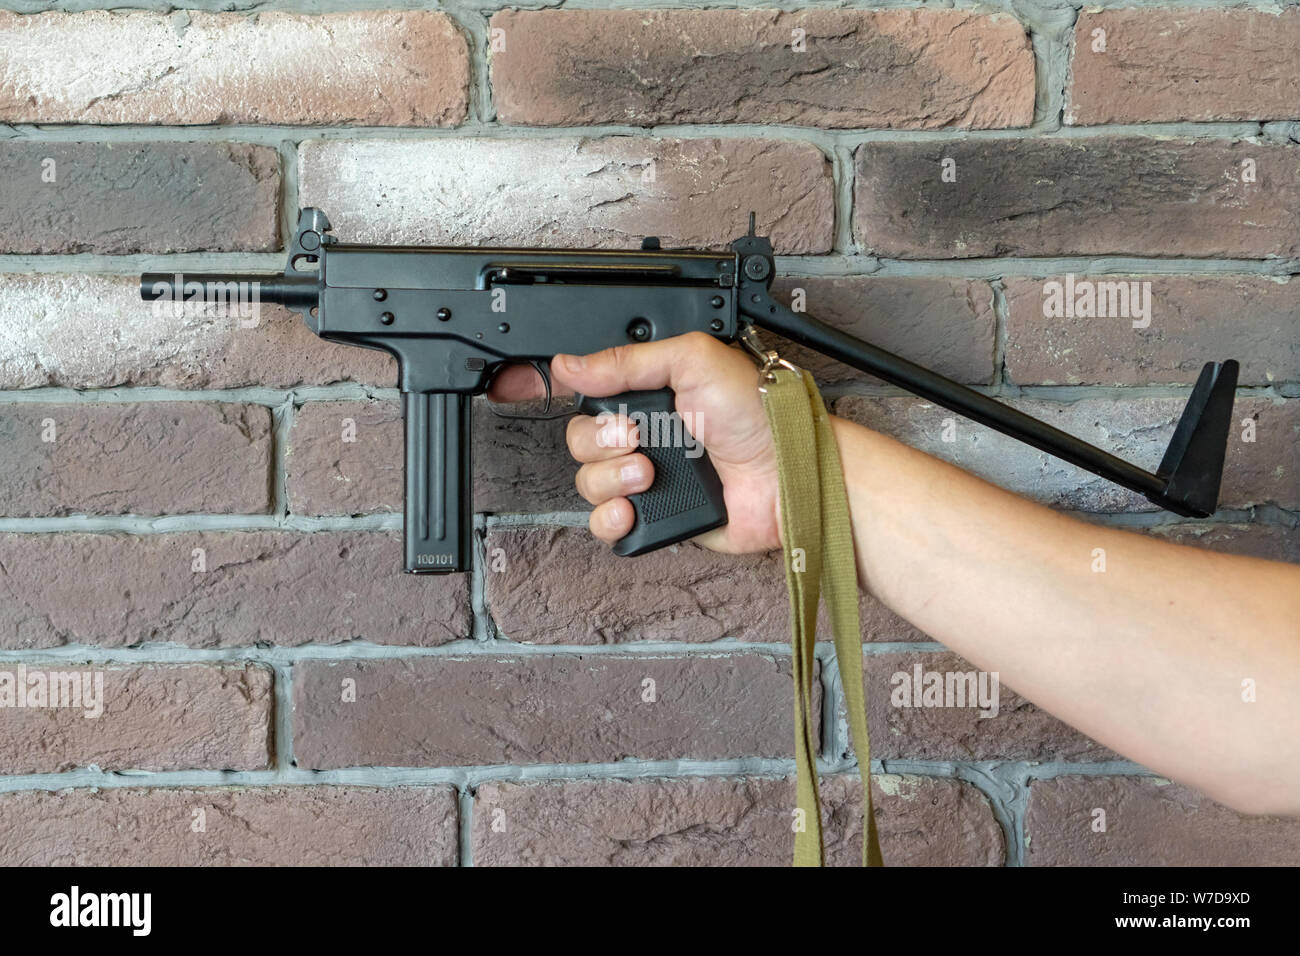 PP-91 Kedr Maschinenpistole. Ein Mann hält ein Maschinengewehr in der Hand auf dem Hintergrund einer braunen Wand. Stockfoto